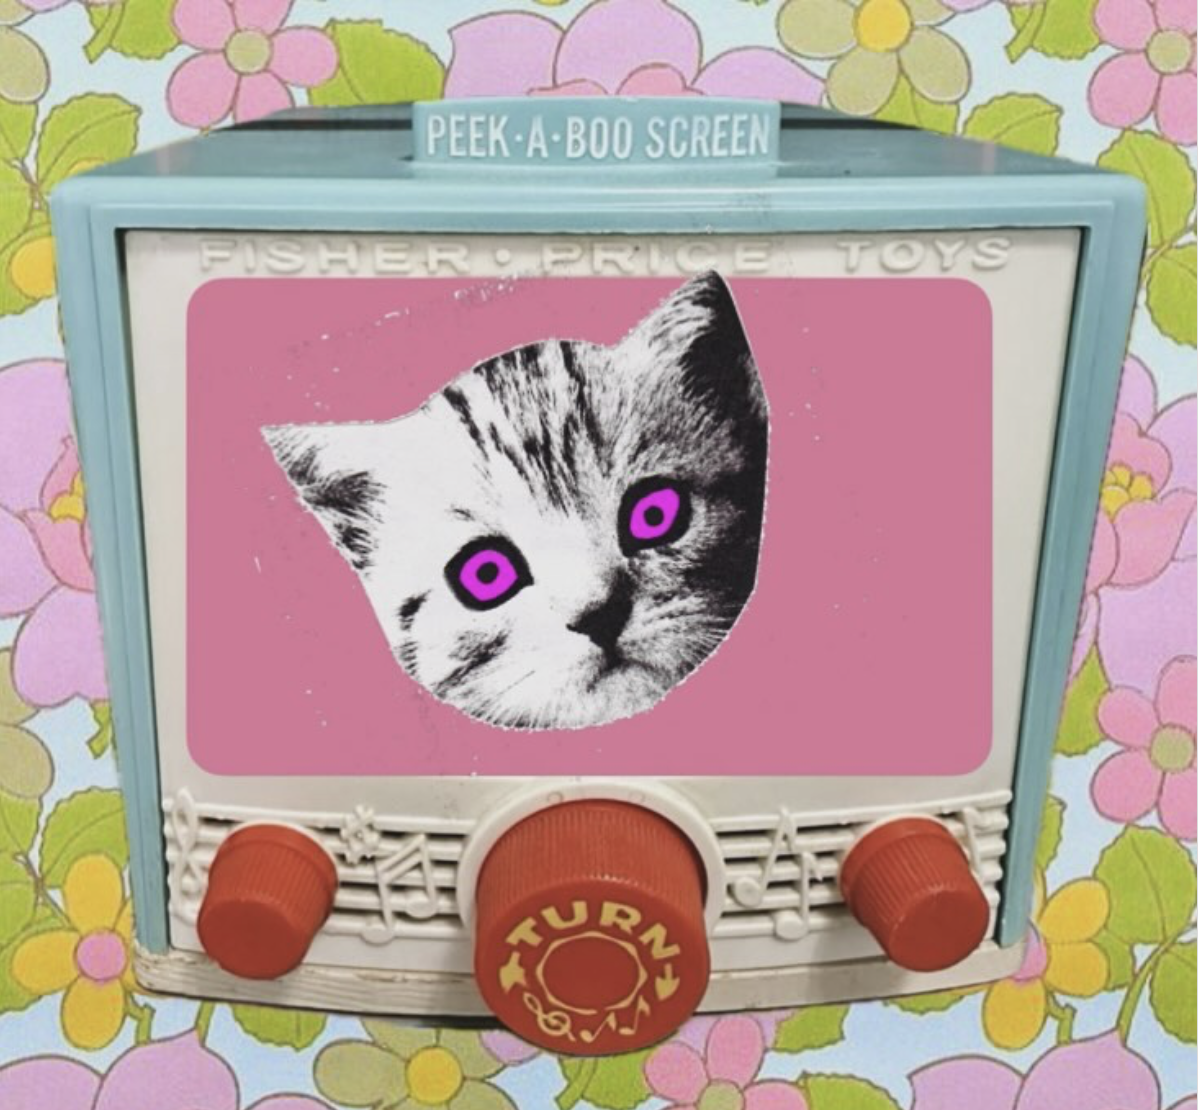 Live DJ Social - Stiff Kittens presents KittyArama